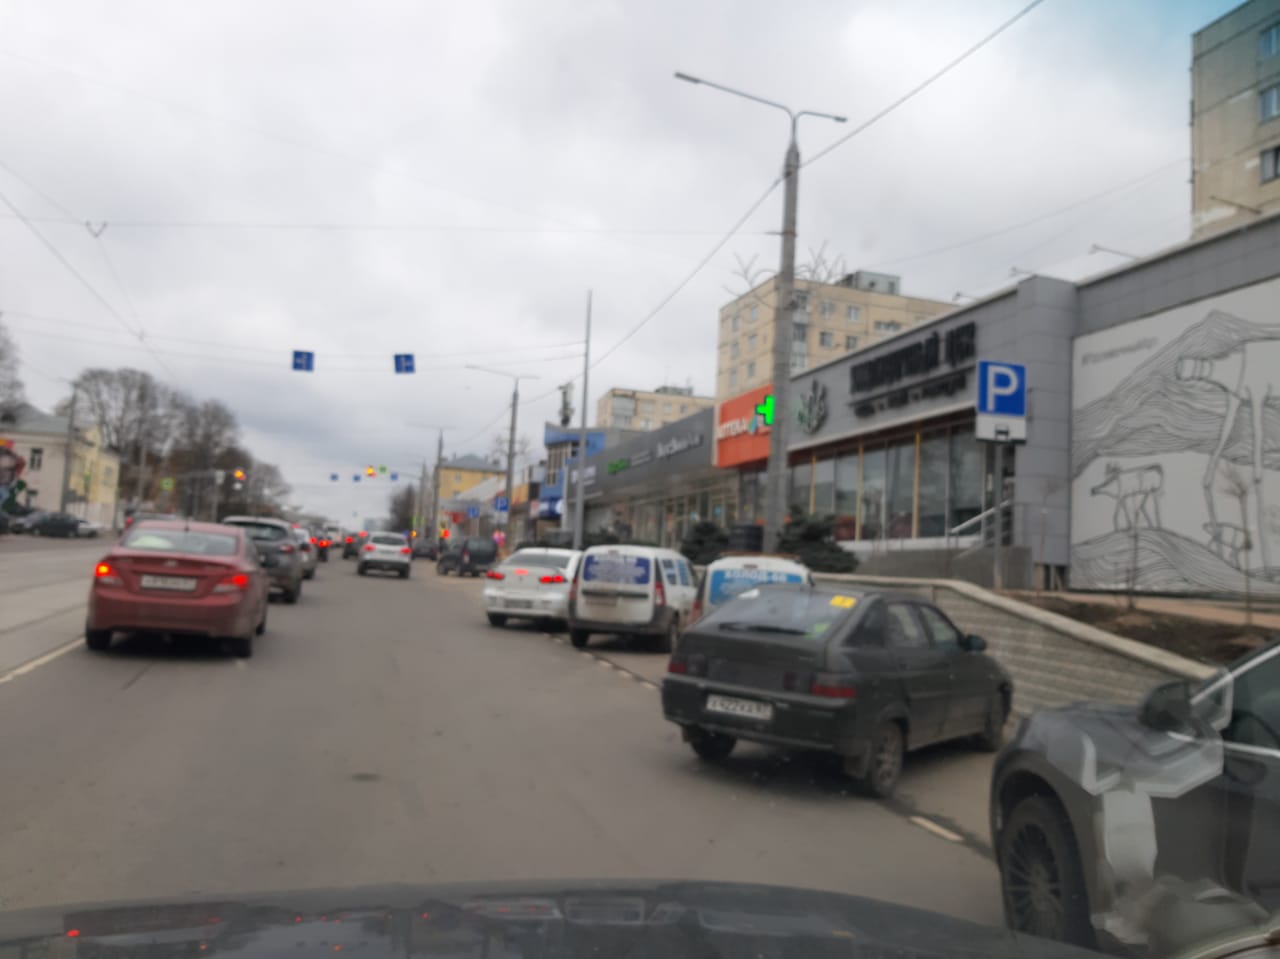 В Смоленске автофургон торговой сети устраивает парковку поперек дороги